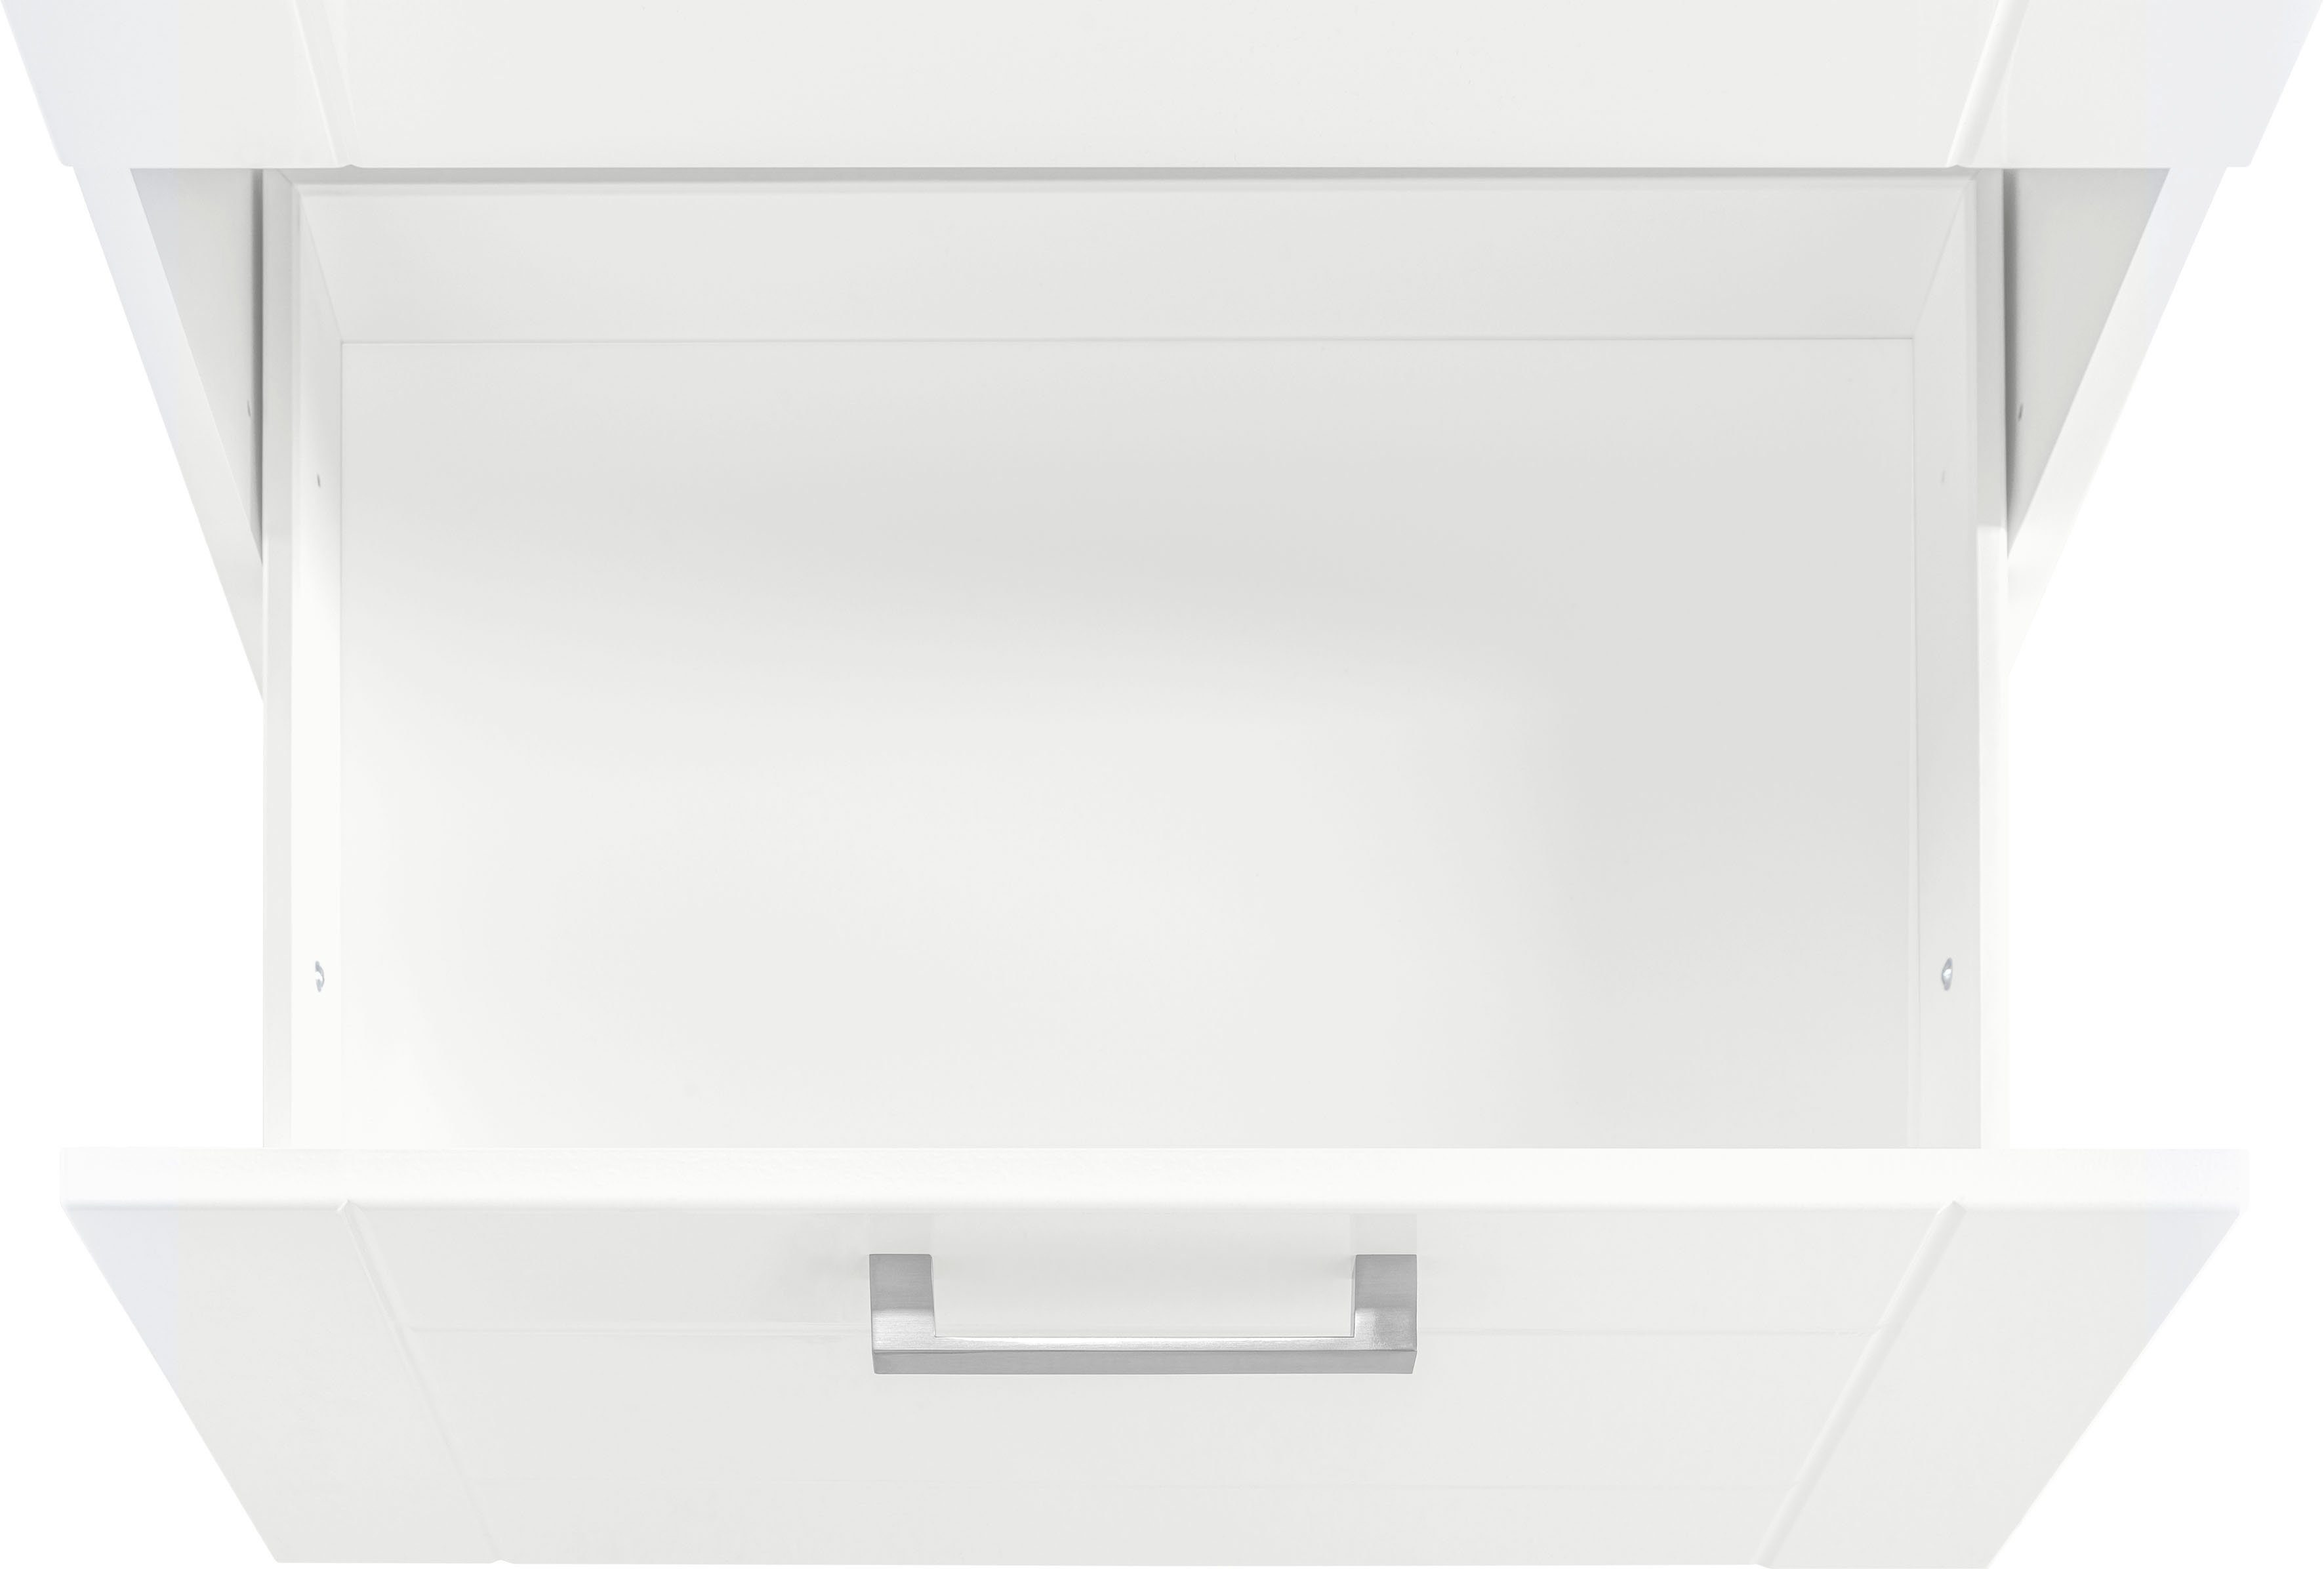 HELD MÖBEL Auszugsunterschrank Tinnum 60 cm | Metallgriff, weiß breit, MDF-Fronten, 1 Schubkasten, weiß 2 Auszüge